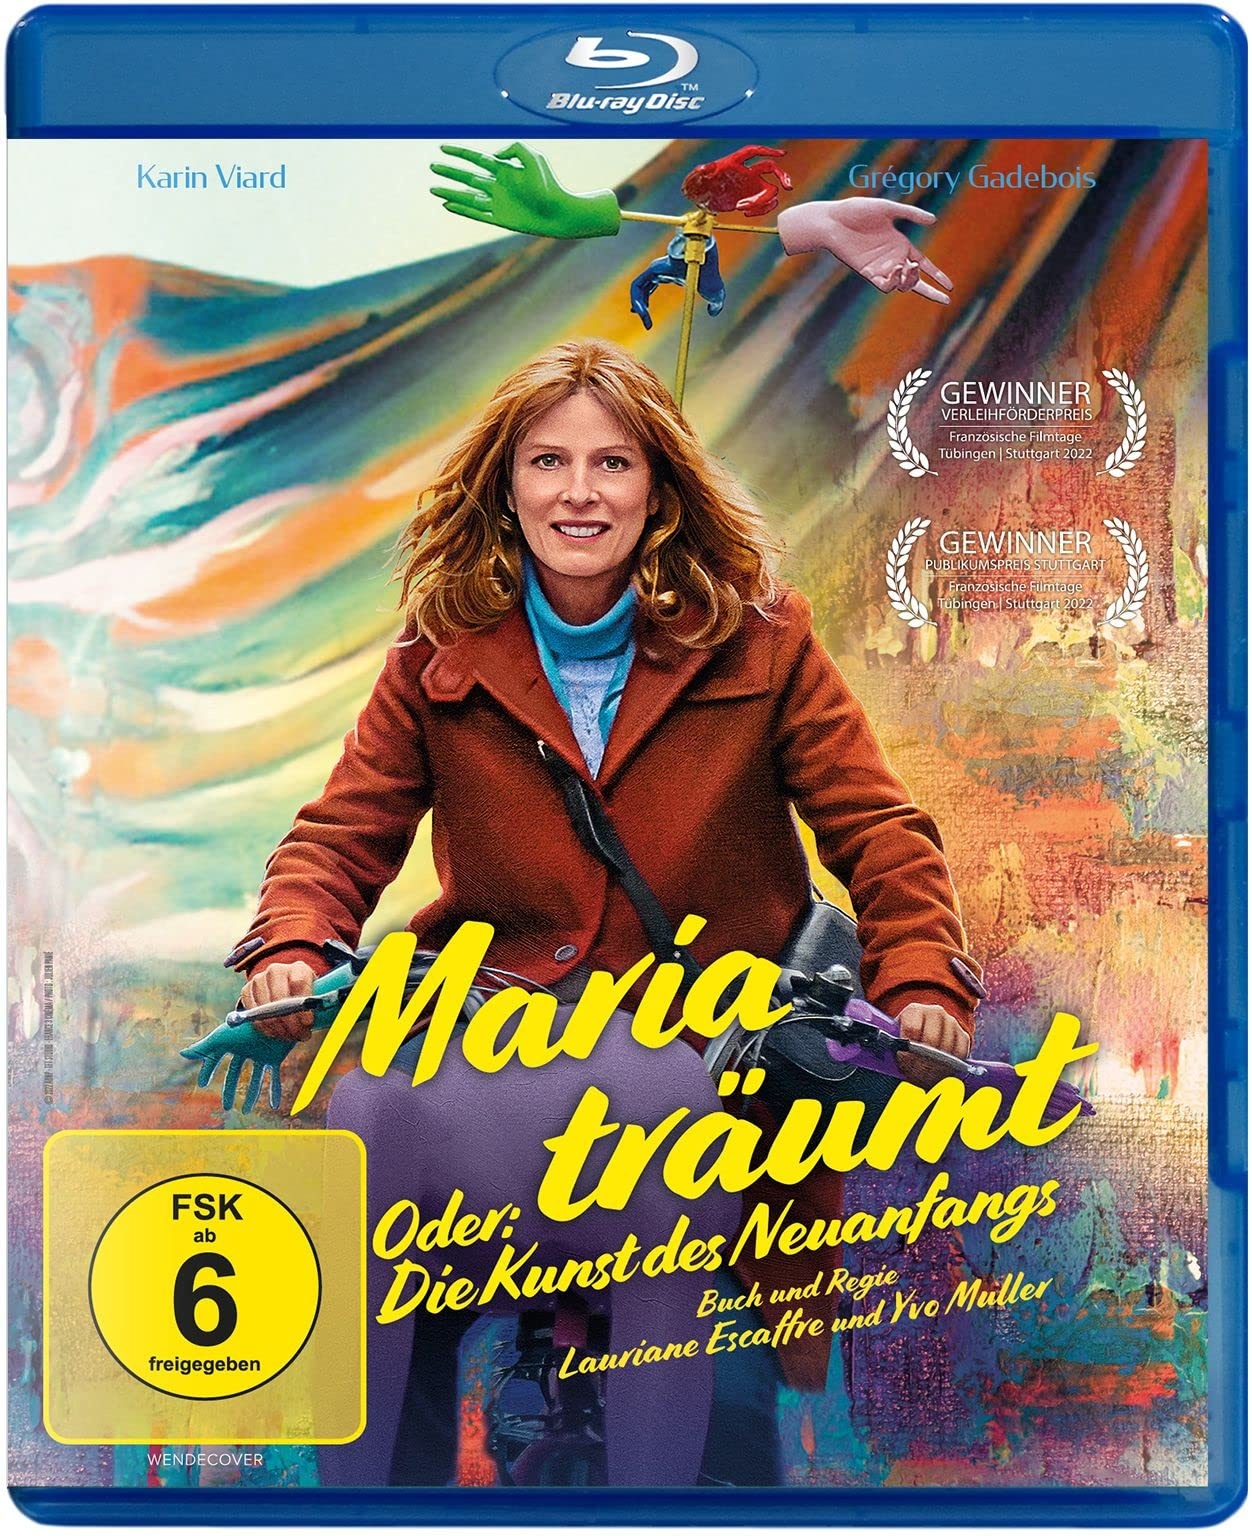 Maria träumt - Oder: Die Kunst des Neuanfangs [Blu-ray] (Neu differenzbesteuert)